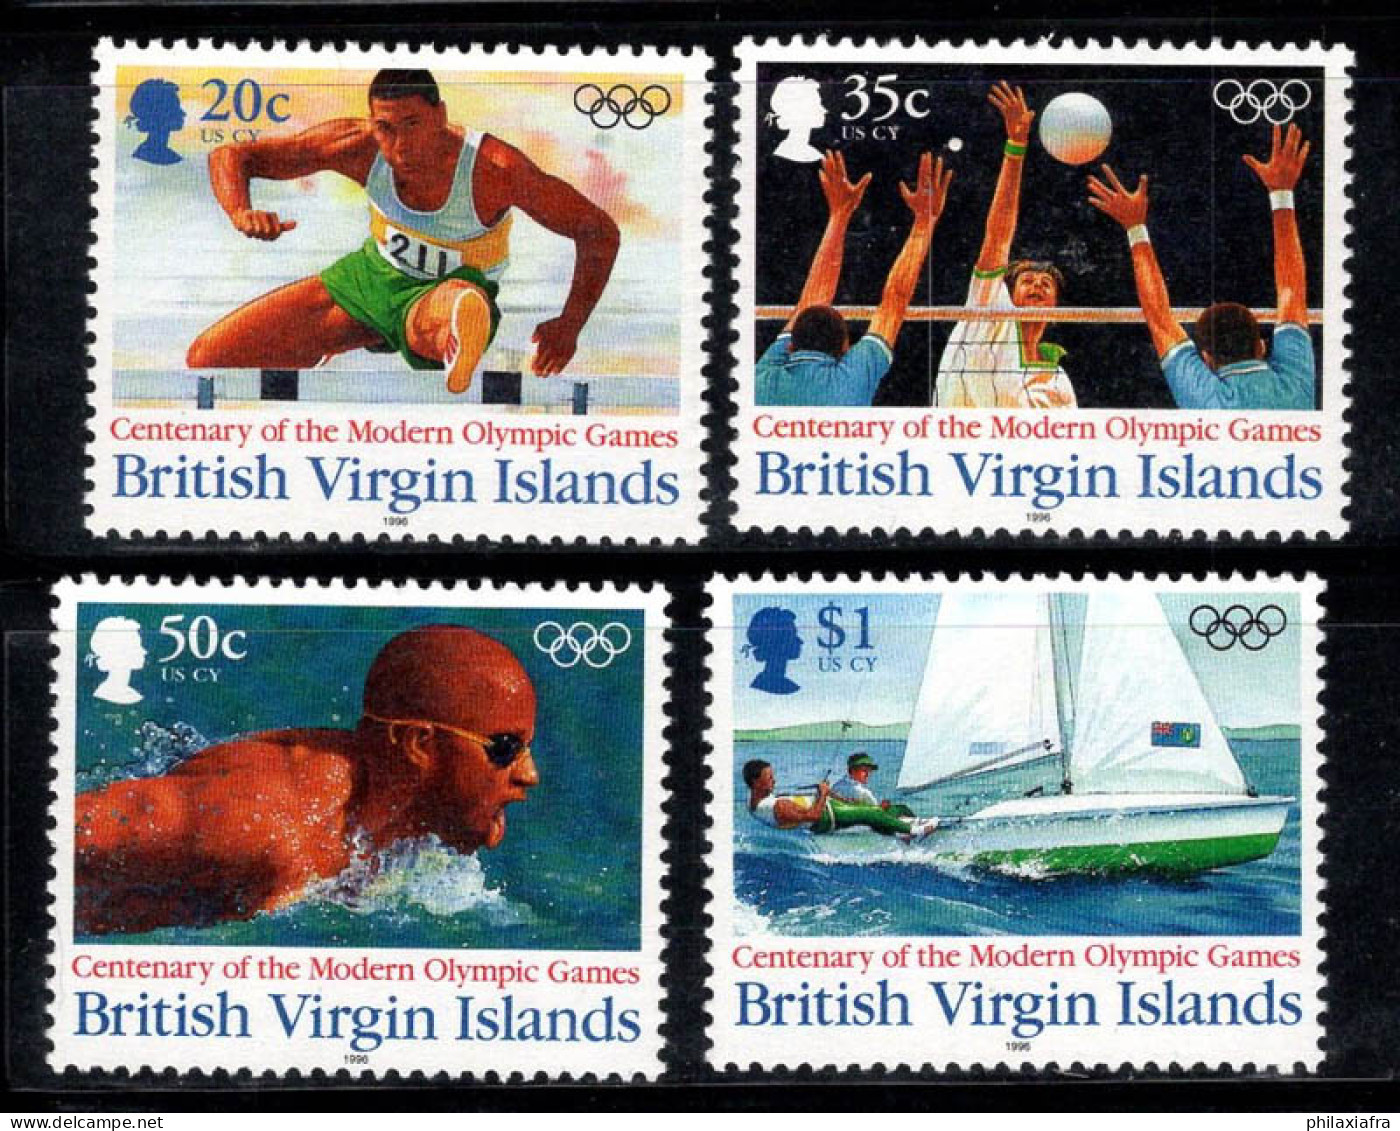 Îles Vierges Britanniques 1996 Mi. 857-860 Neuf ** 100% Jeux Olympiques, Sports - British Virgin Islands